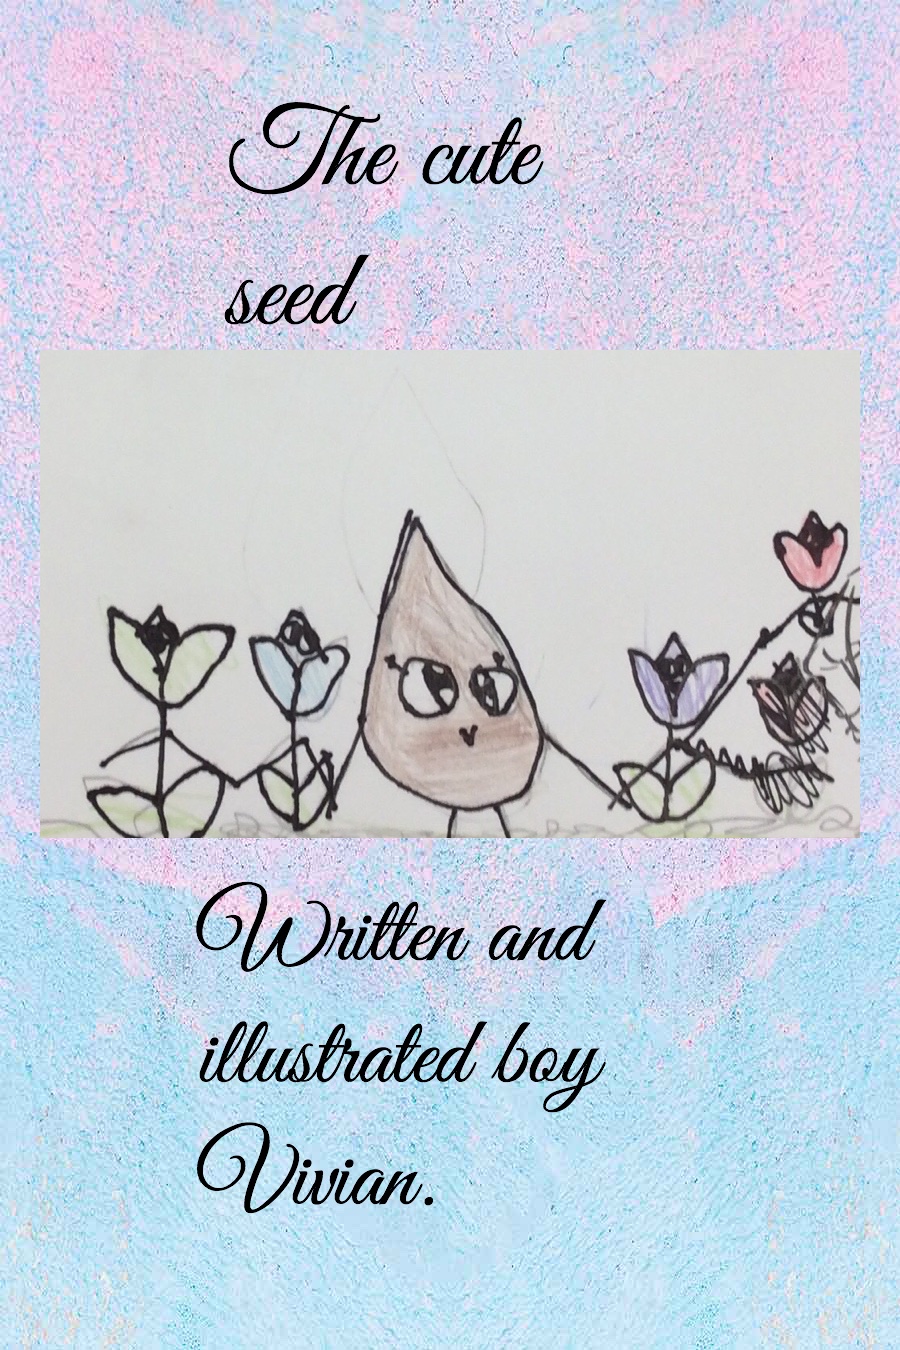 A Cute Seed by Vivian B